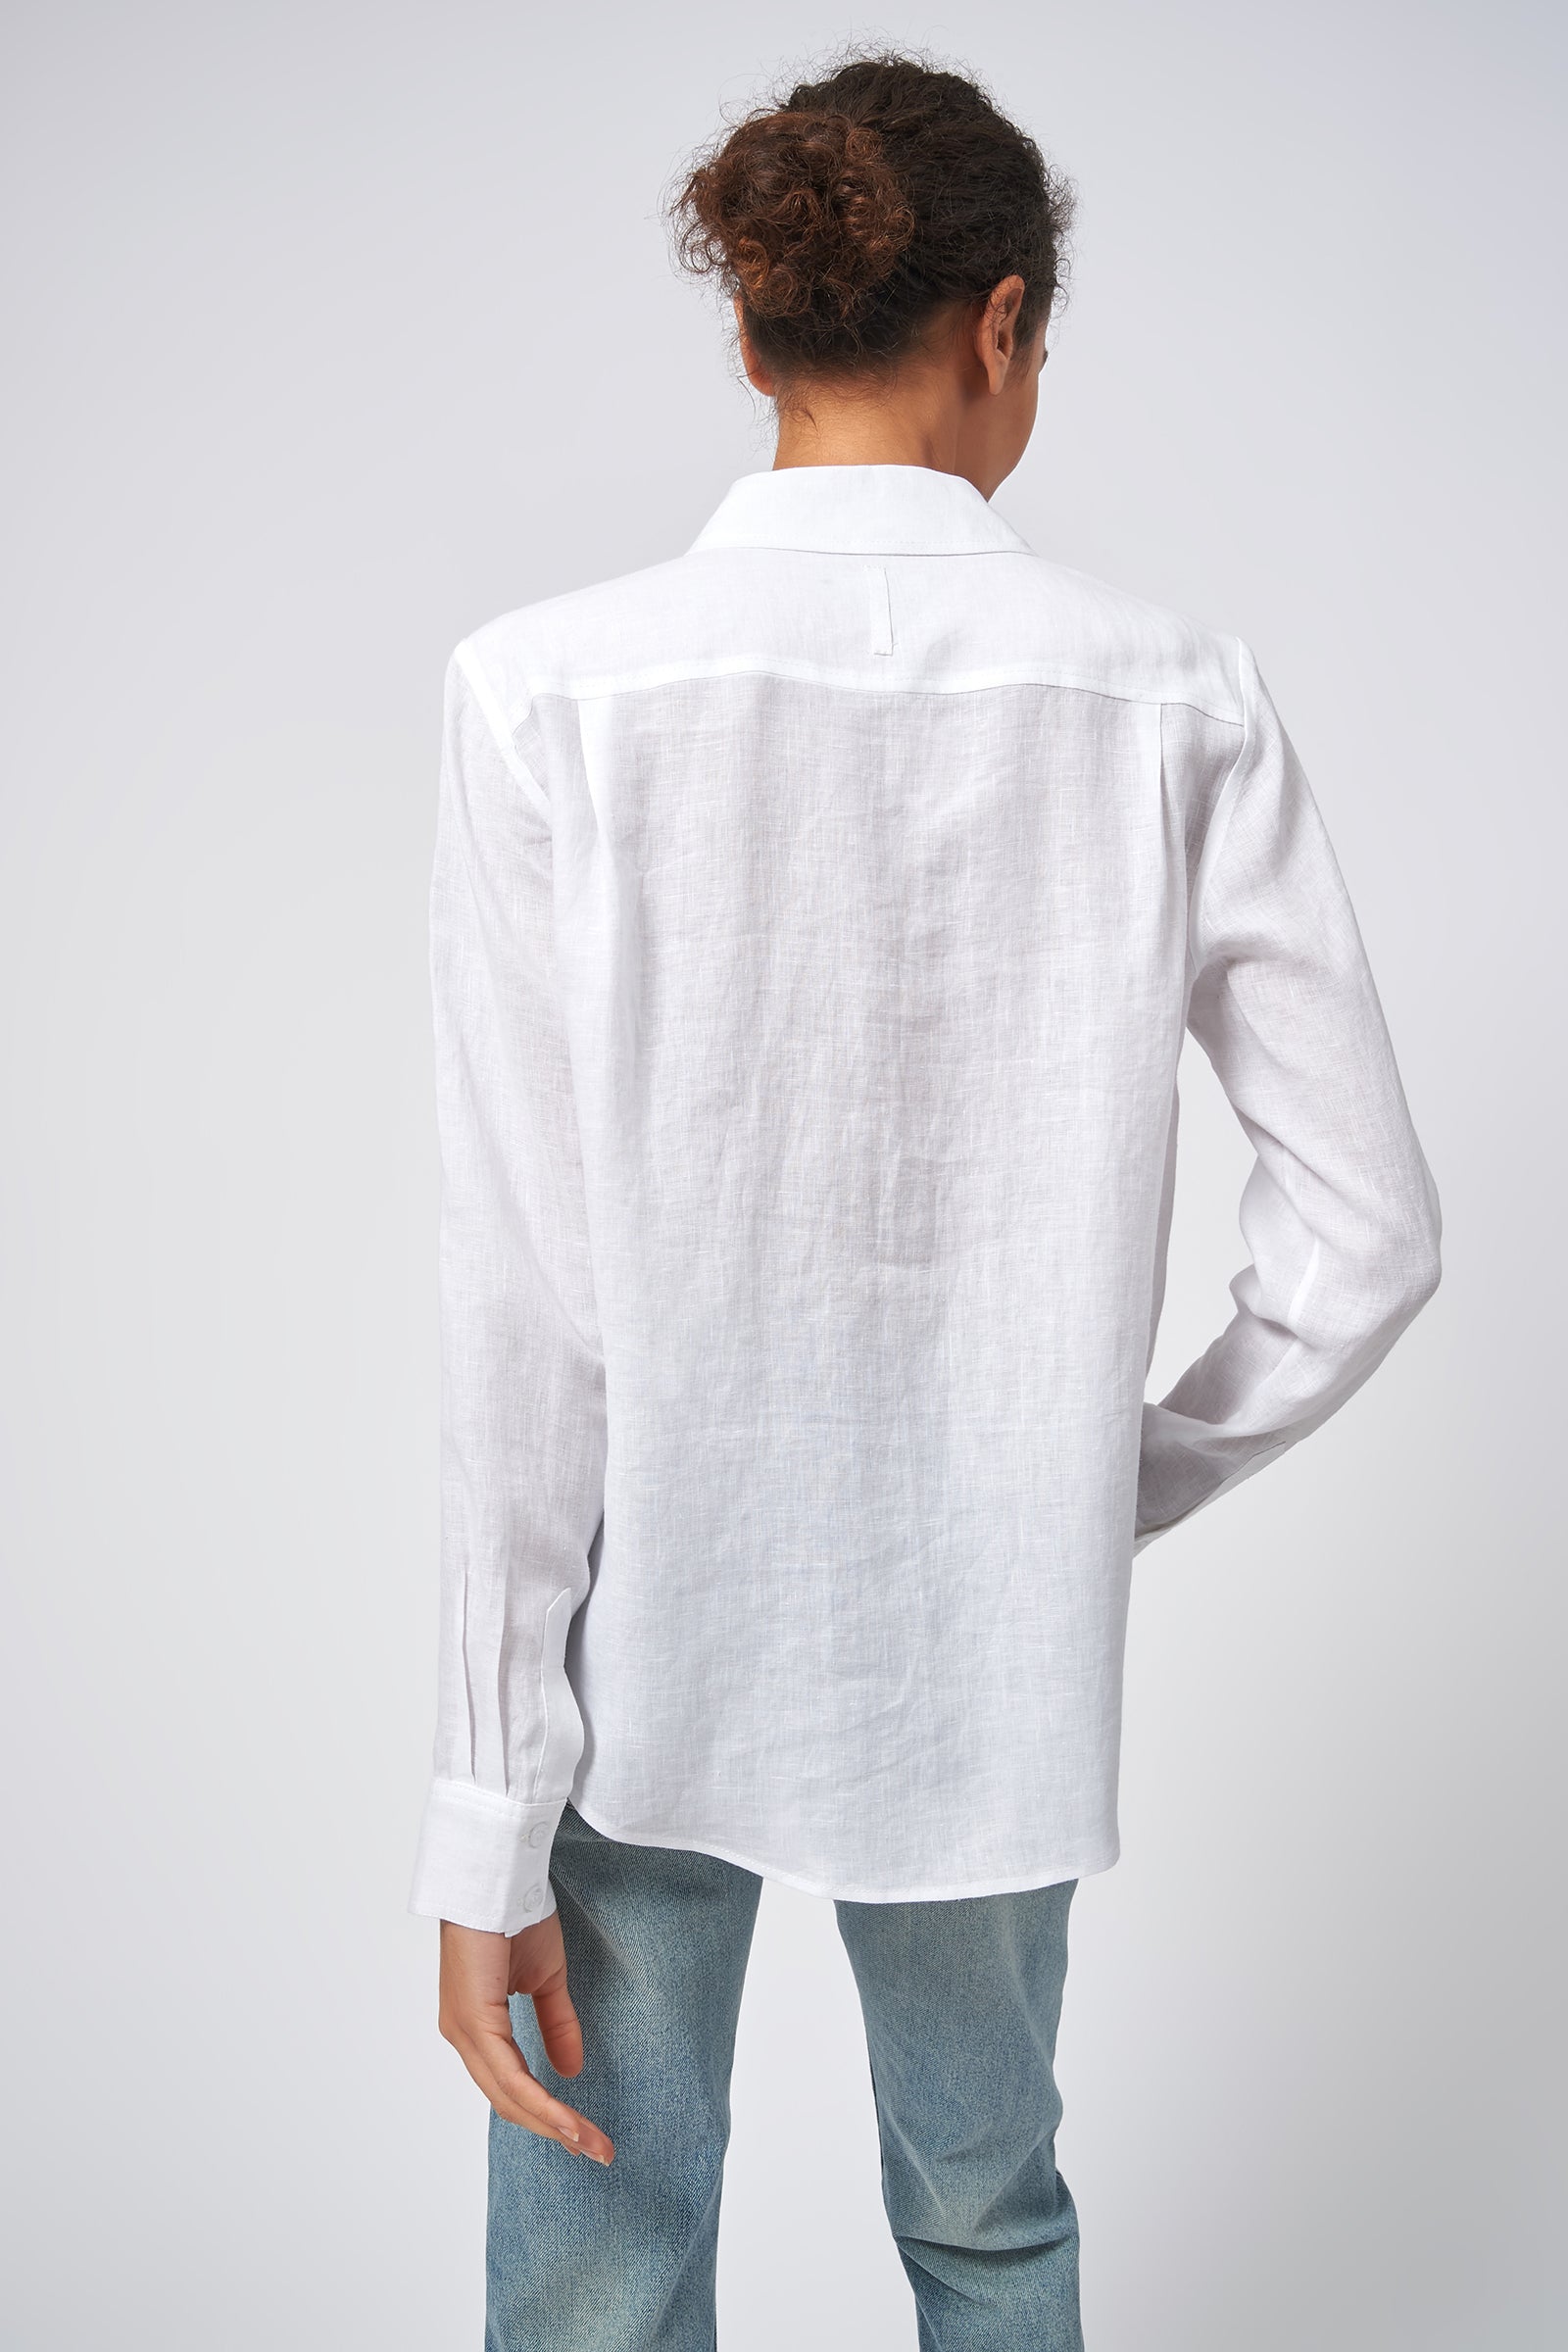 Summer Shirt - White Linen – KAL RIEMAN